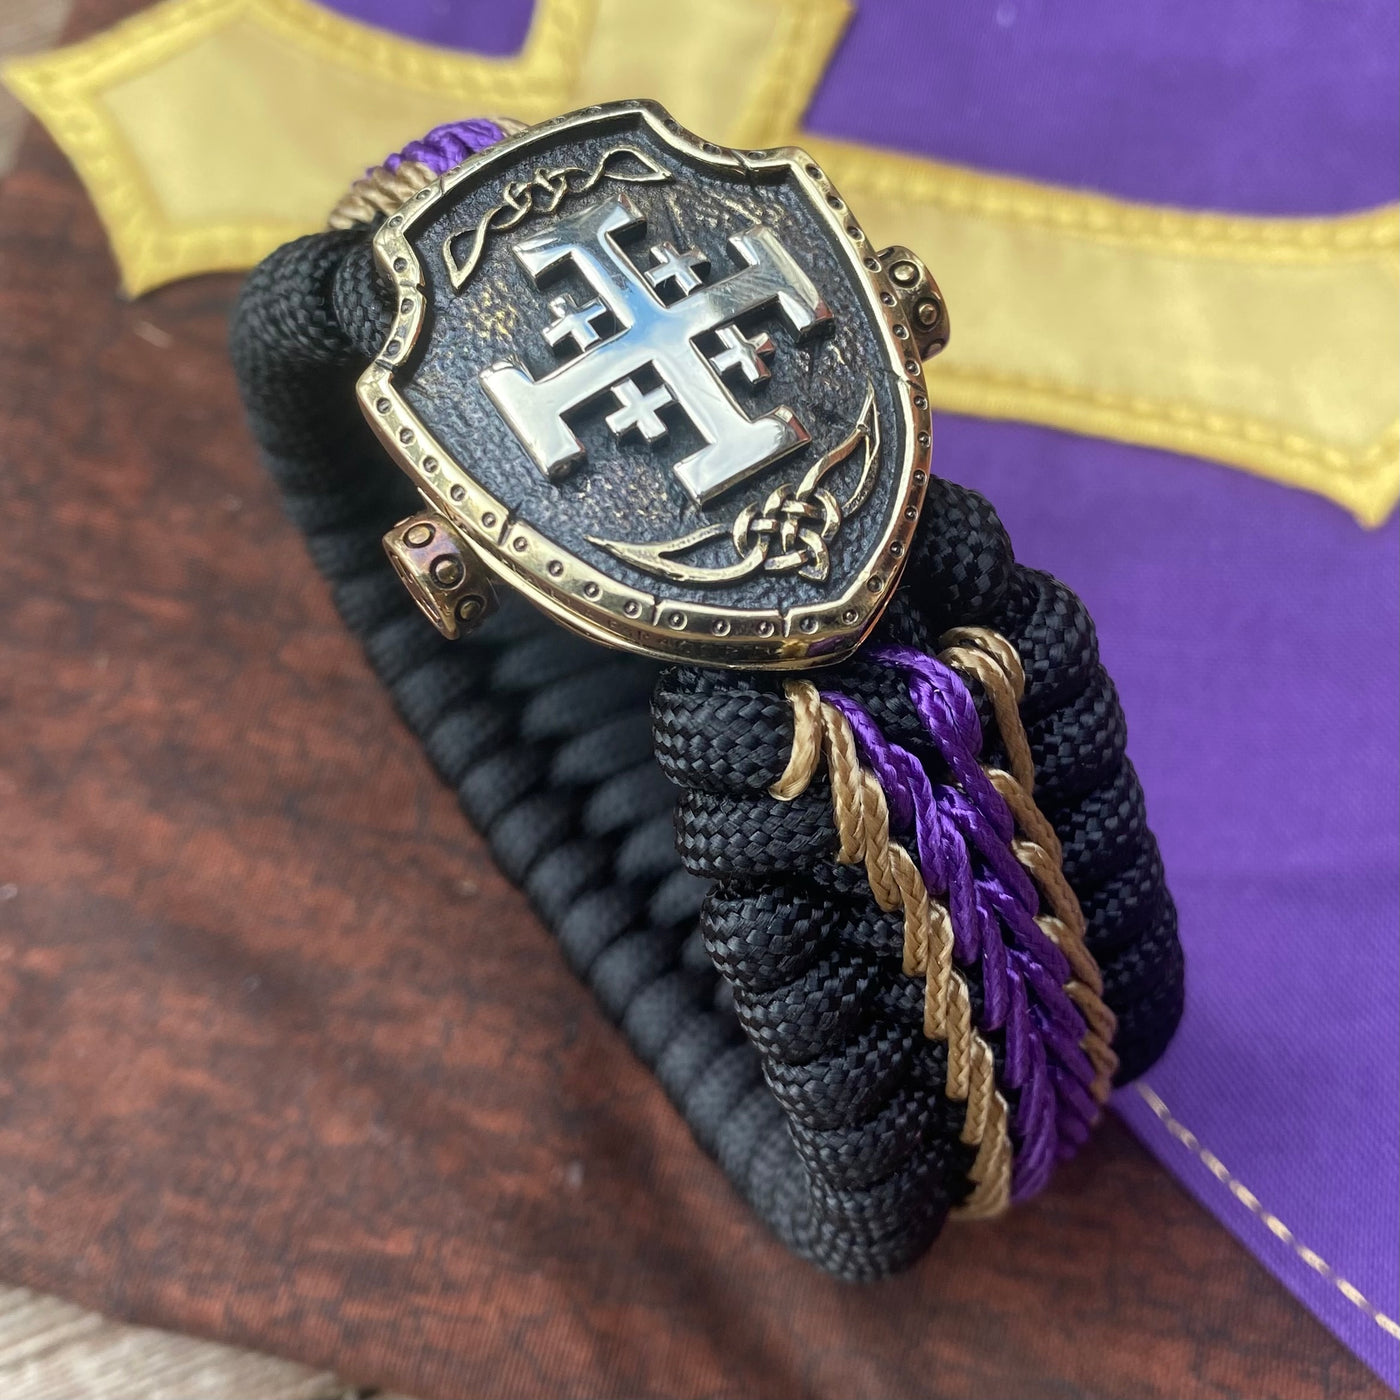 Grand Order of Jerusalem bracelet